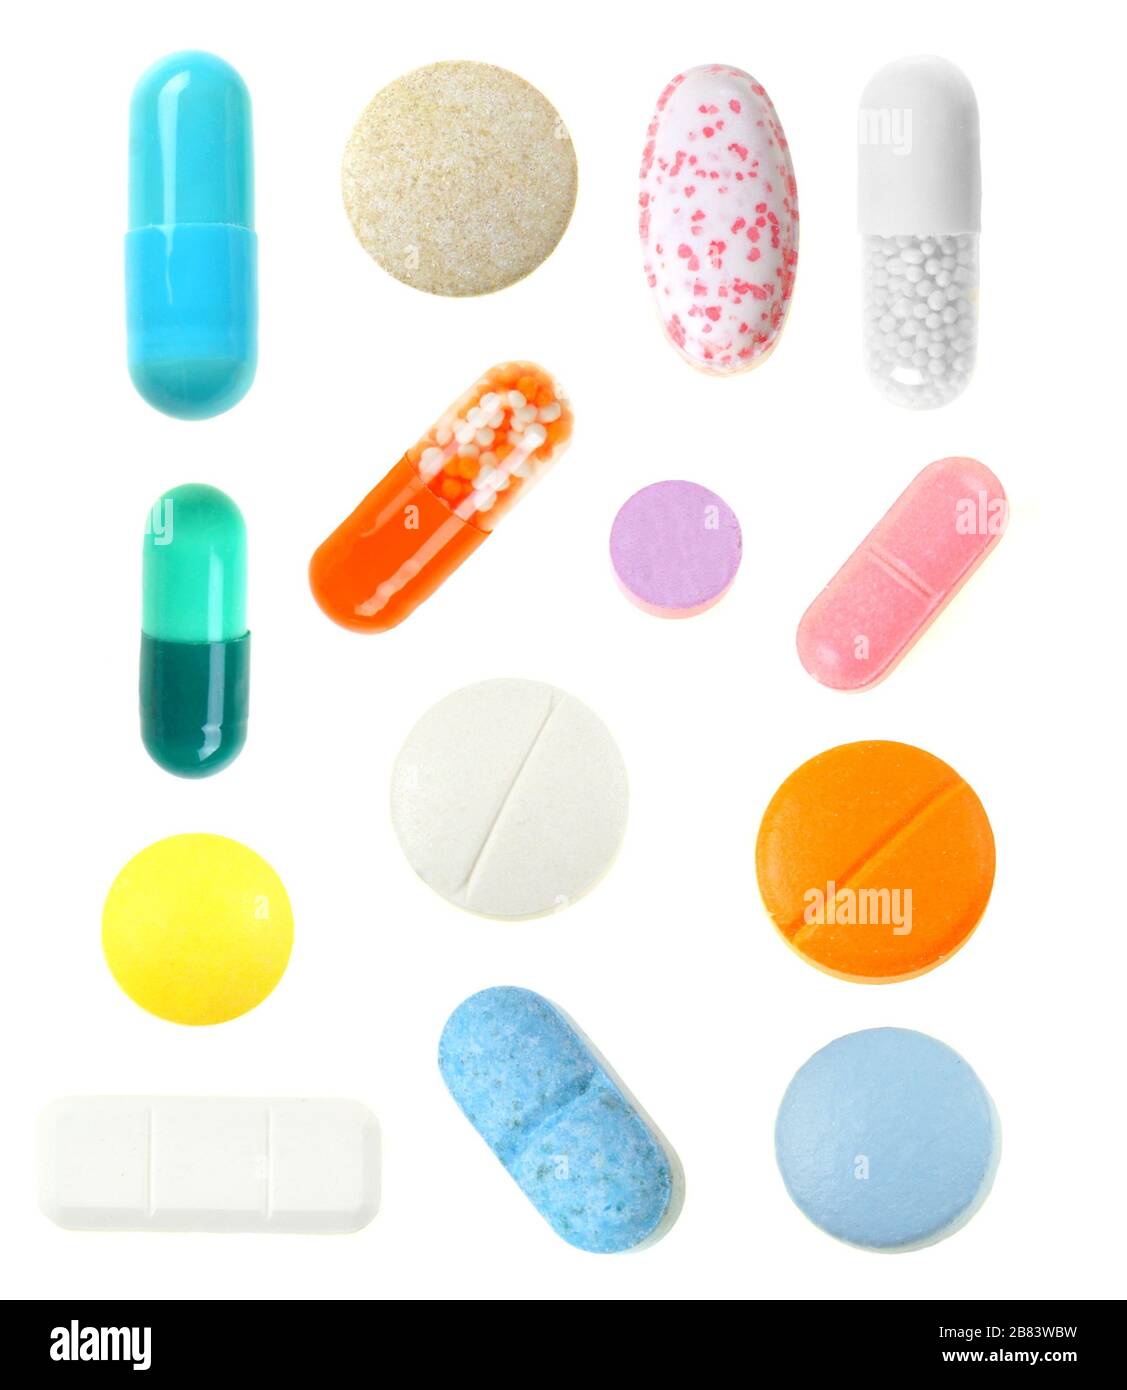 Raggruppa pillole uniche isolate individualmente su uno sfondo bianco Foto Stock